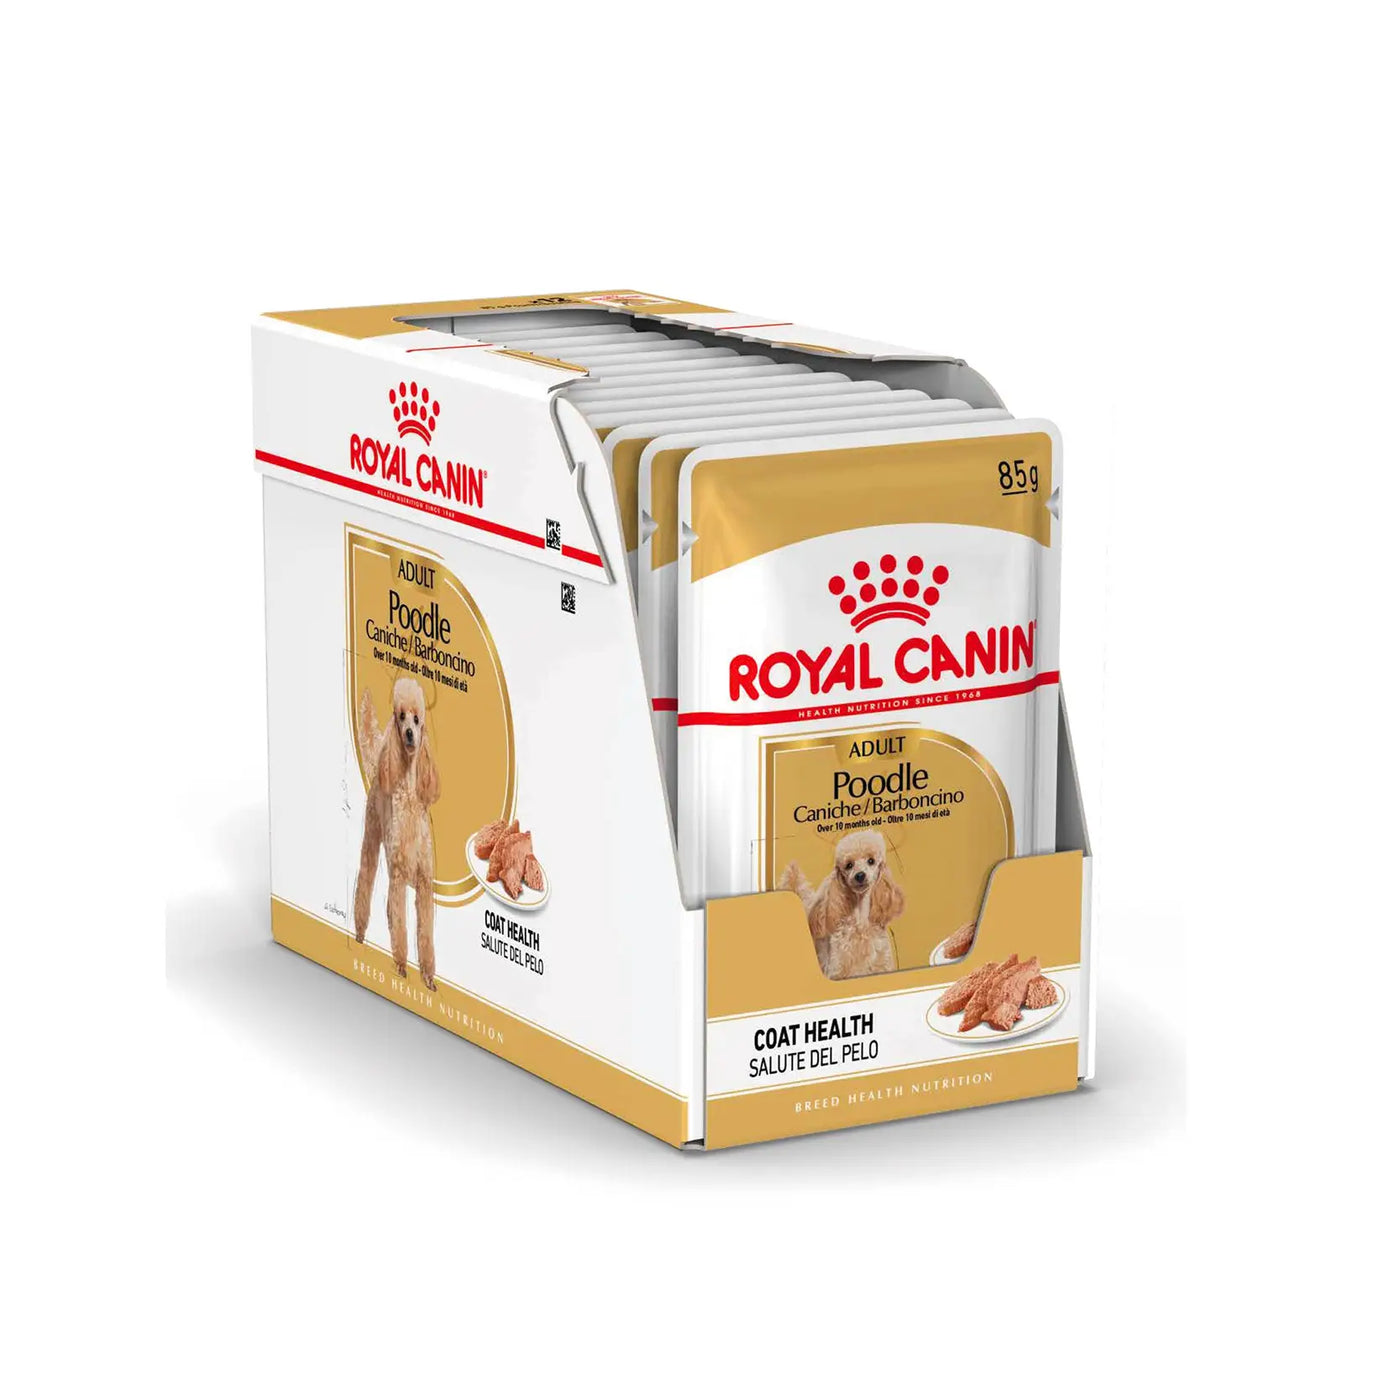 Royal Canin - Adult Poodle Loaf Wet Food 85g